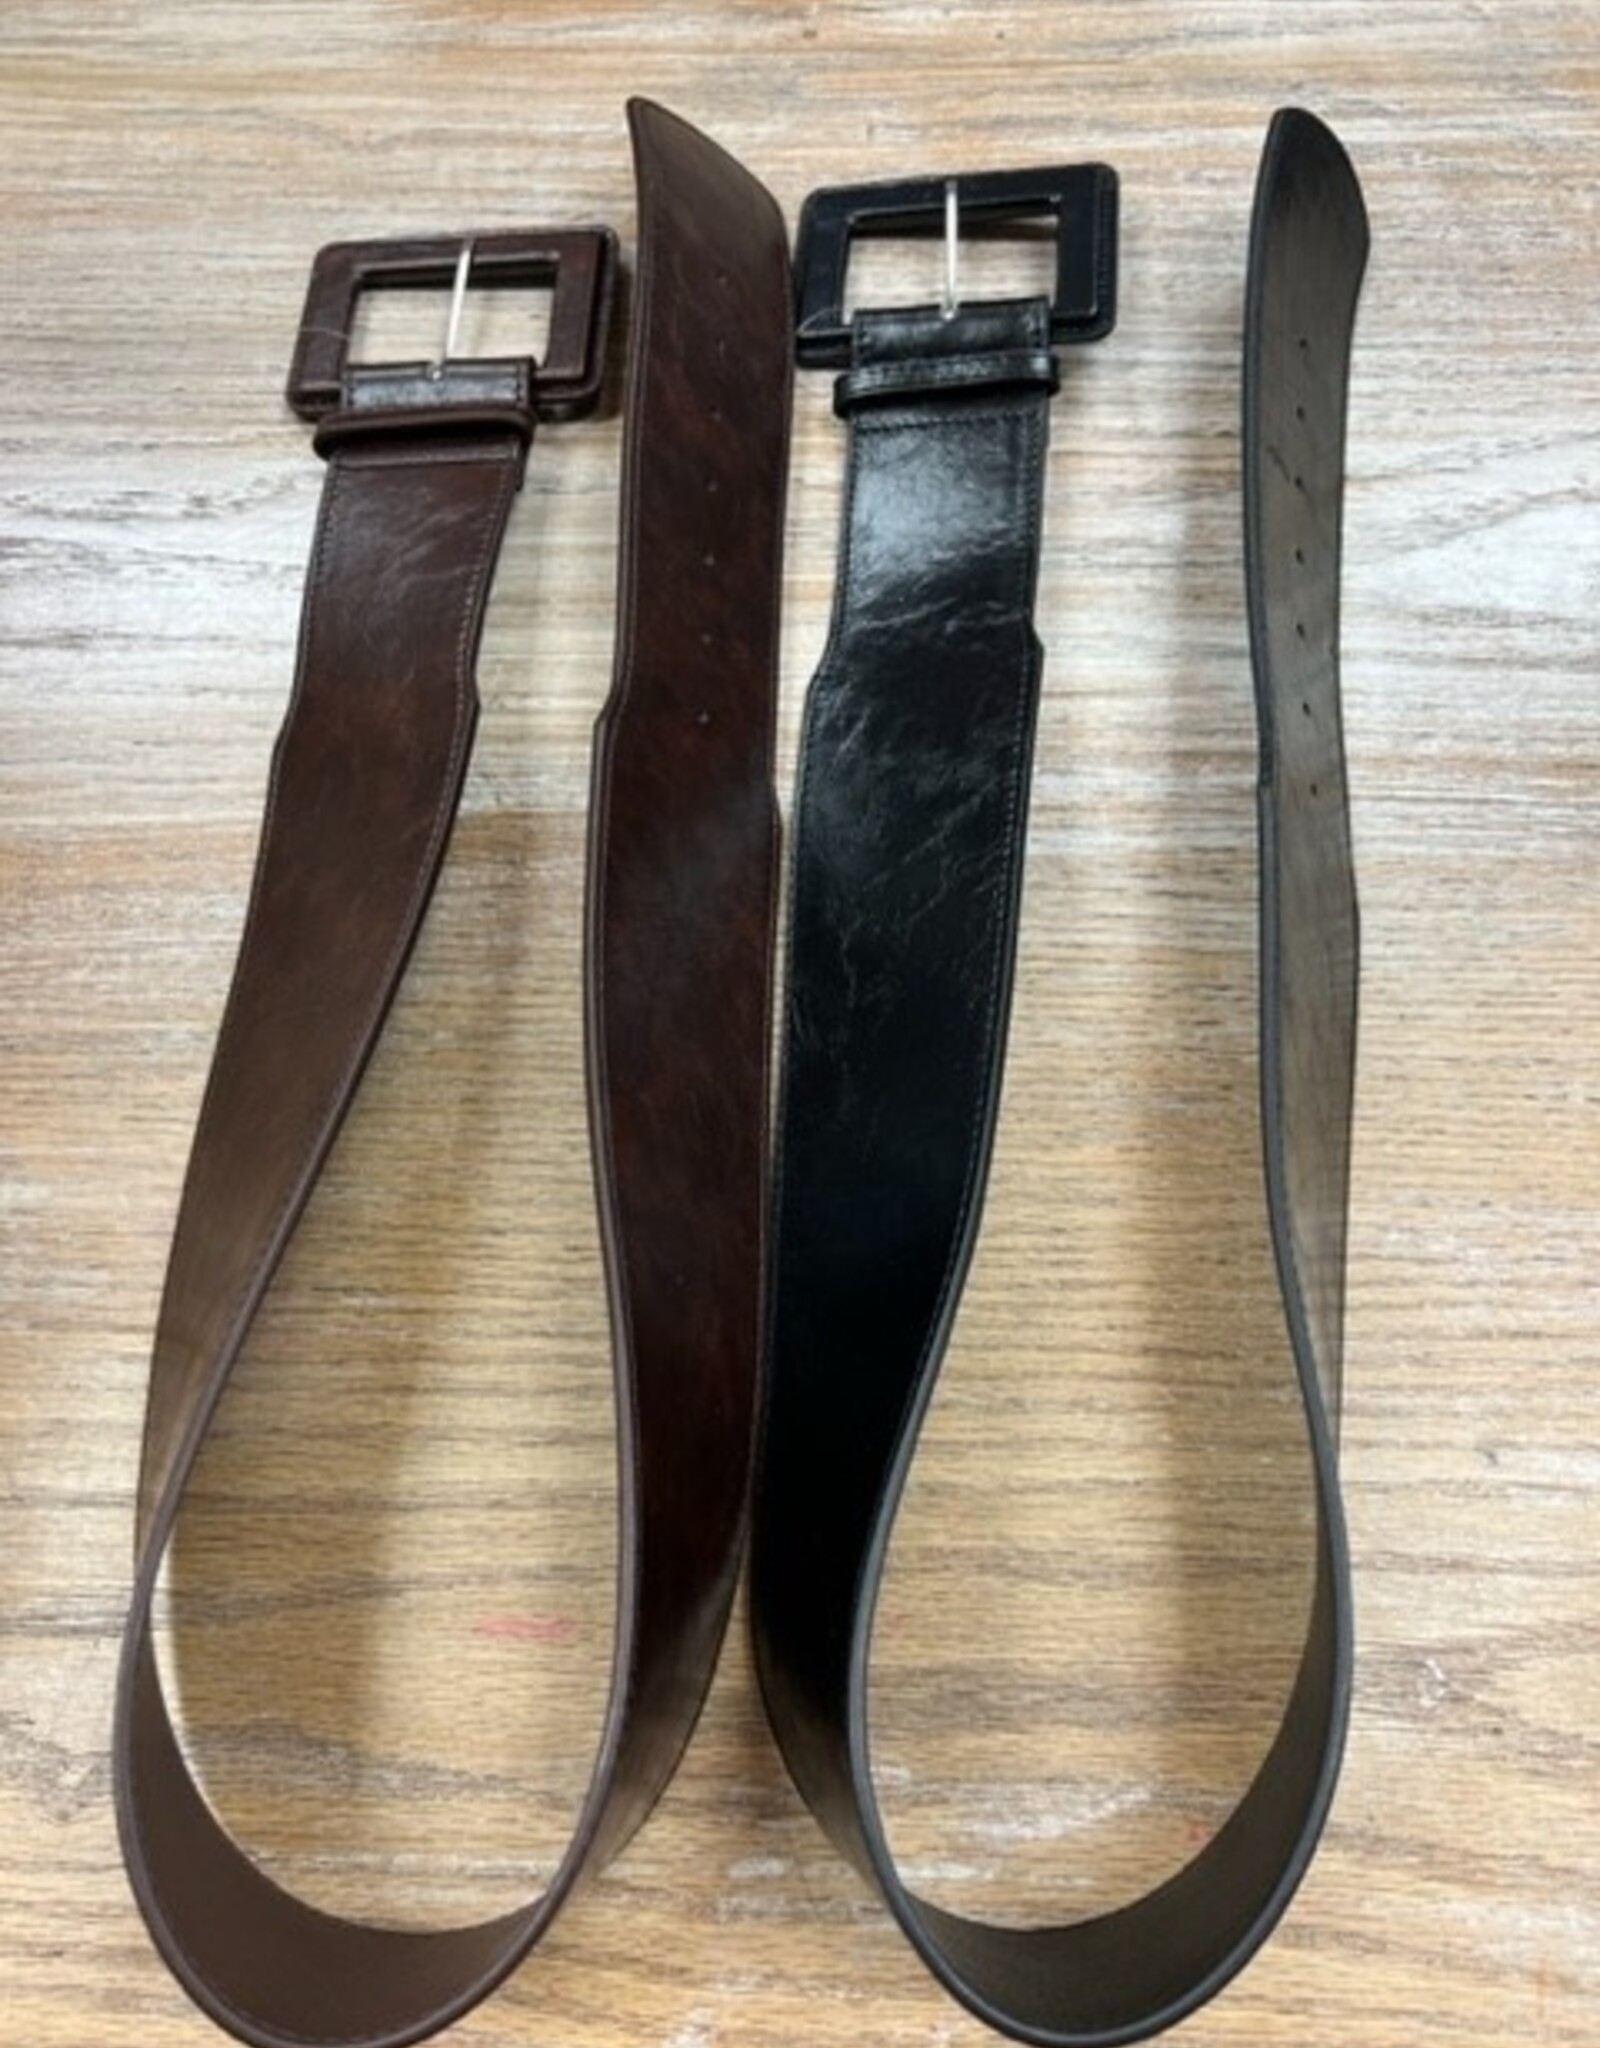 Belt Black or Brown Buckle Belt